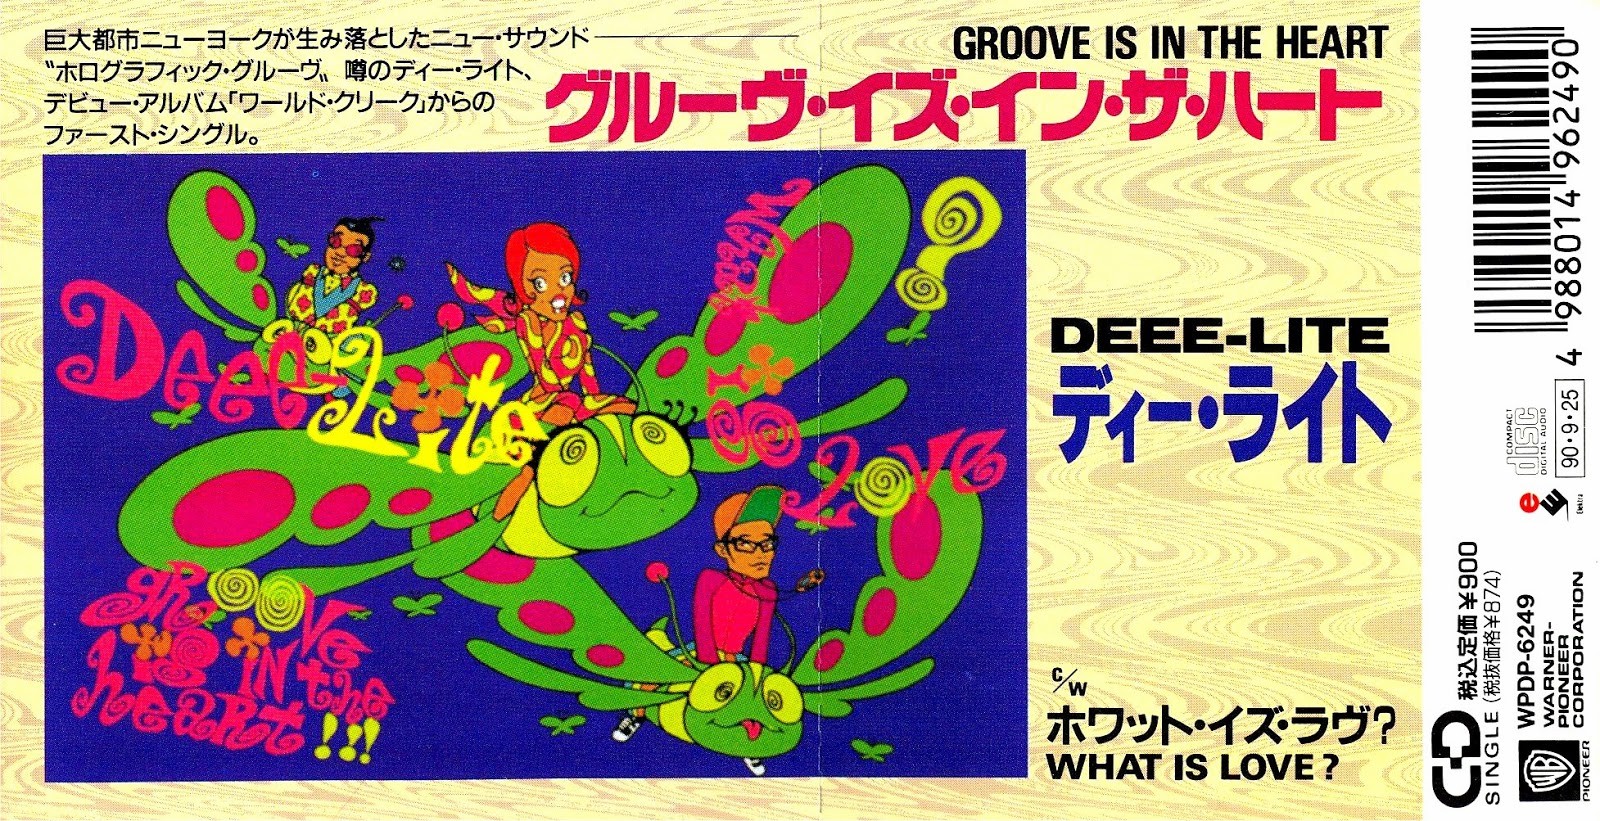 DEEE-LITE Groove Is In The Heart [Japanese 3"CD] WPDP-6249 Warner-Pioneer Corporation 9|25|1990